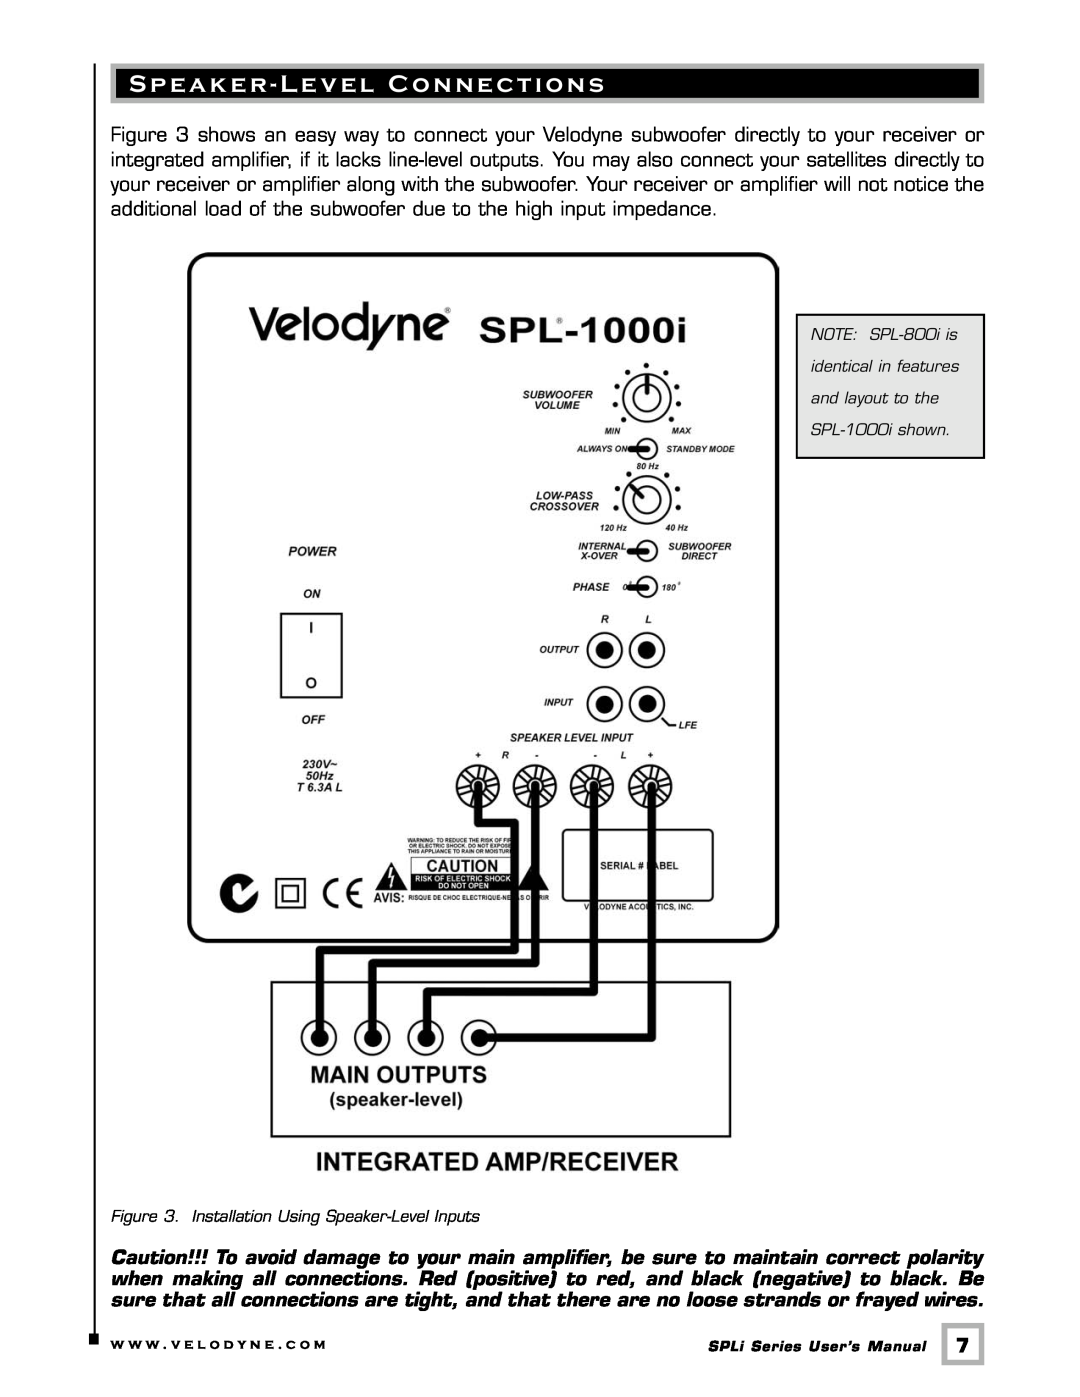 Velodyne Acoustics SPL-1000I user manual Speaker - Level Connections 